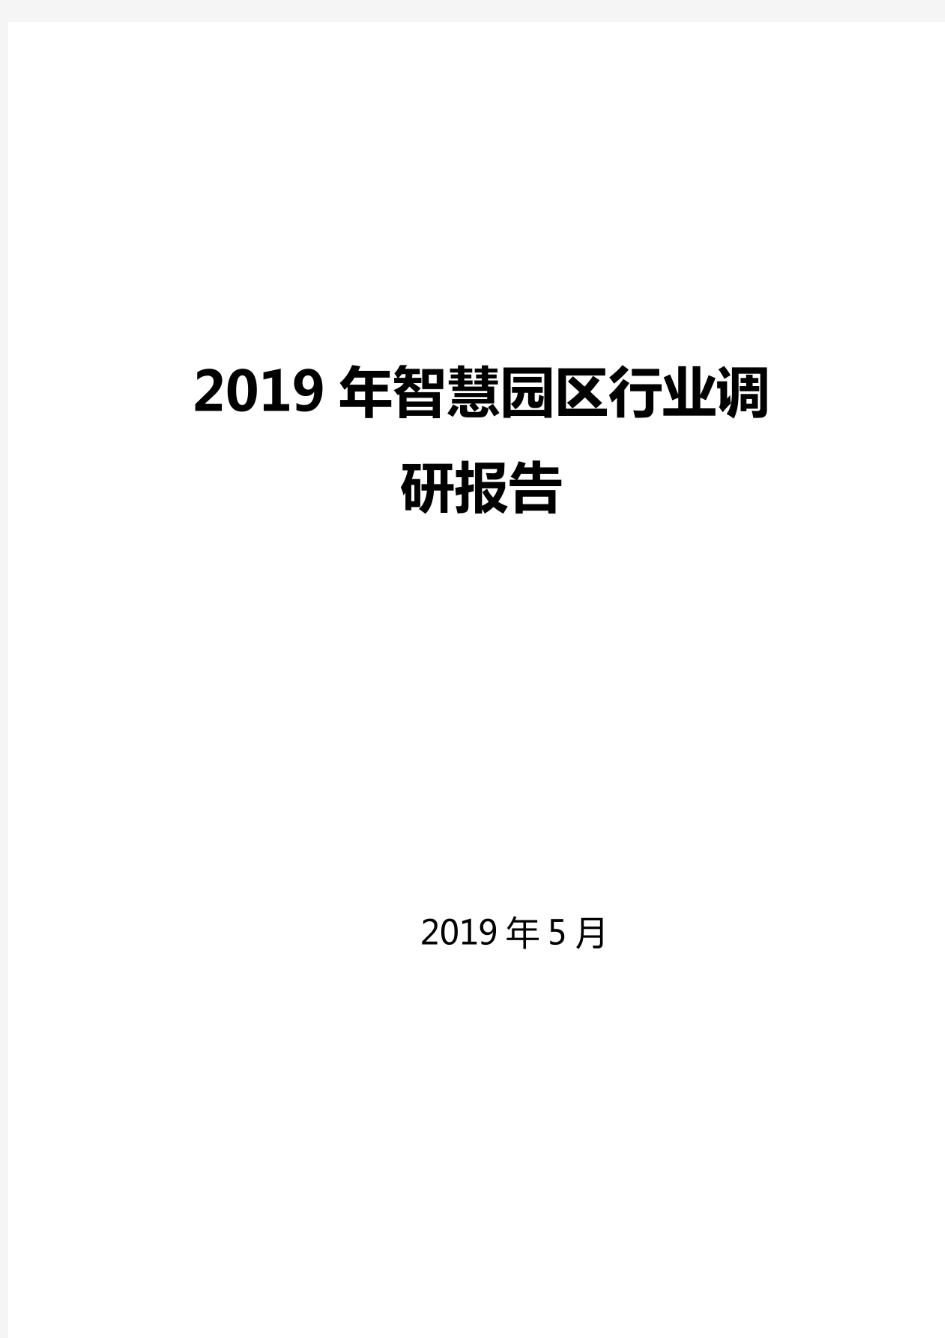 2019年智慧园区行业调研报告